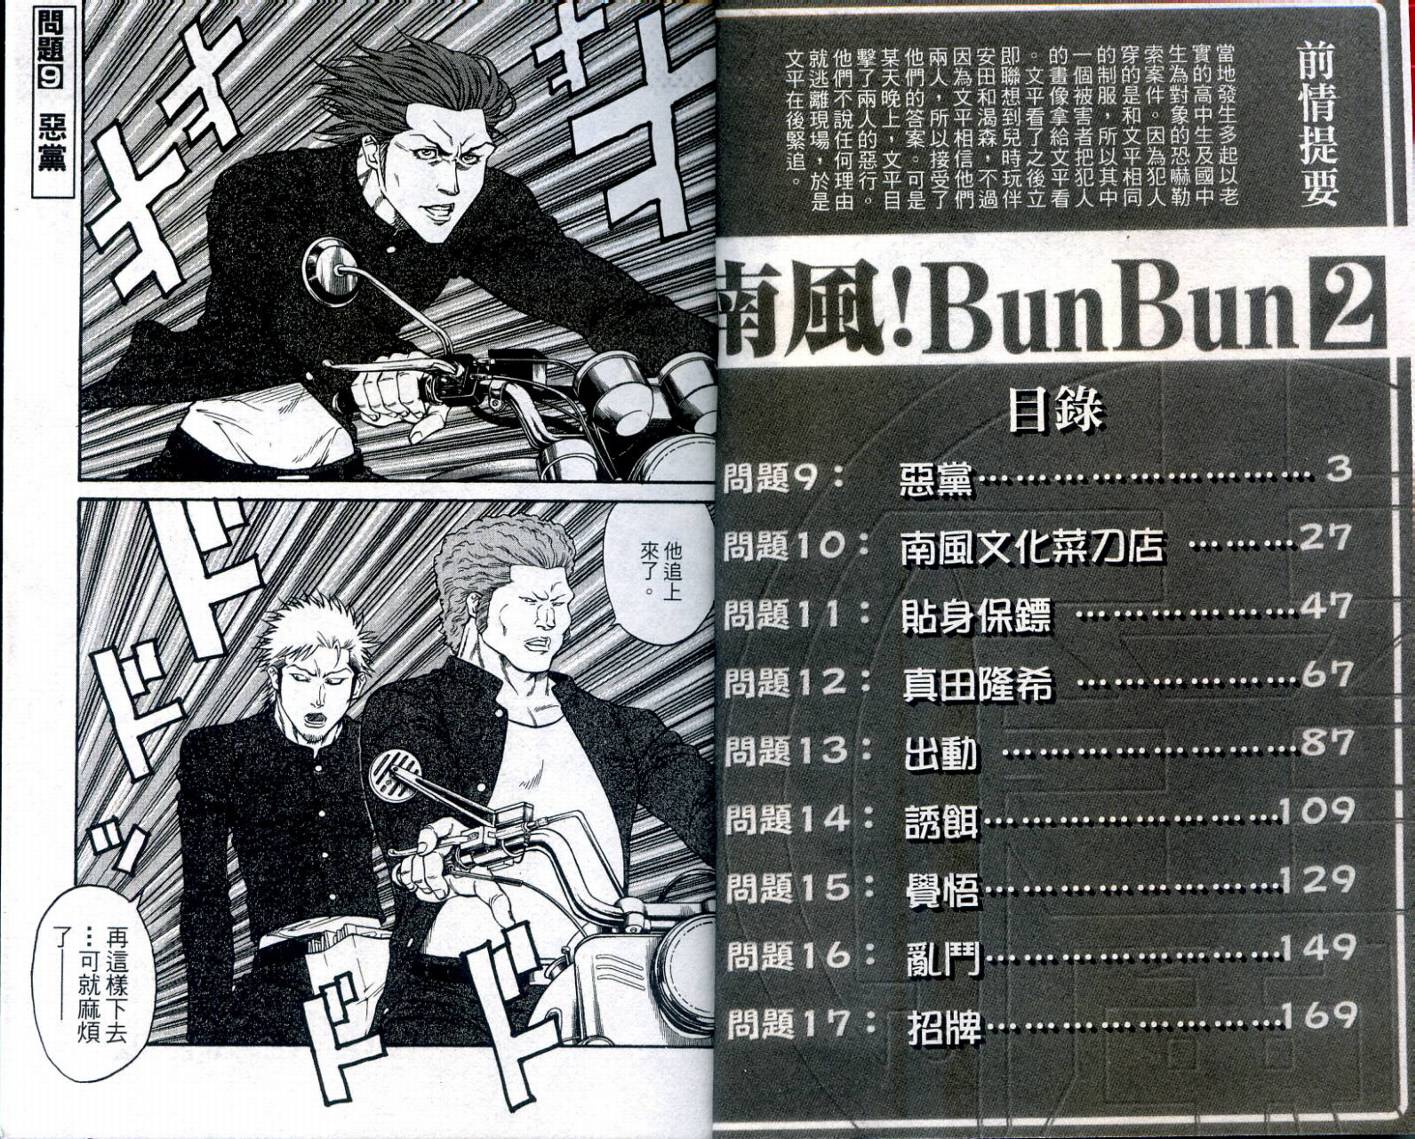 南風 Bunbun Vol02 漫畫線上看 動漫戲說 Acgn Cc